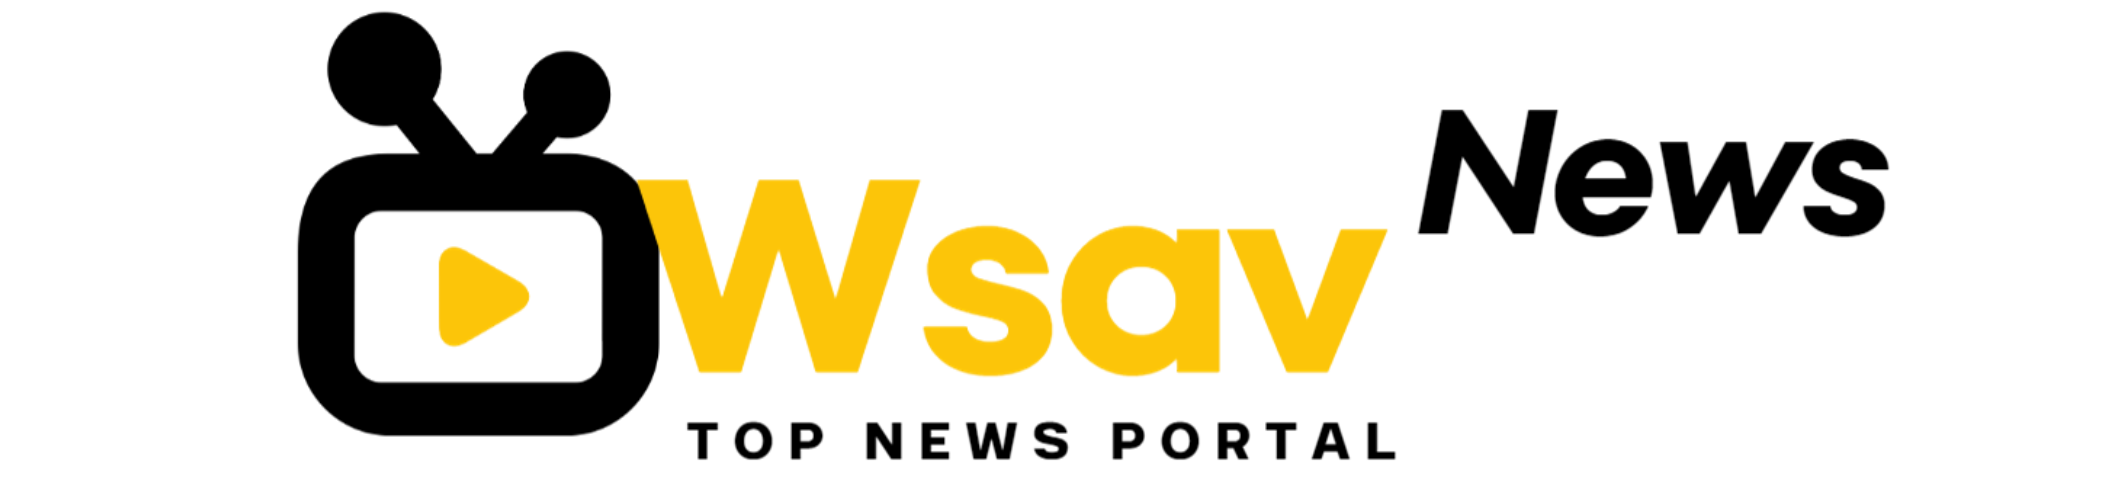 Wsavnews.com